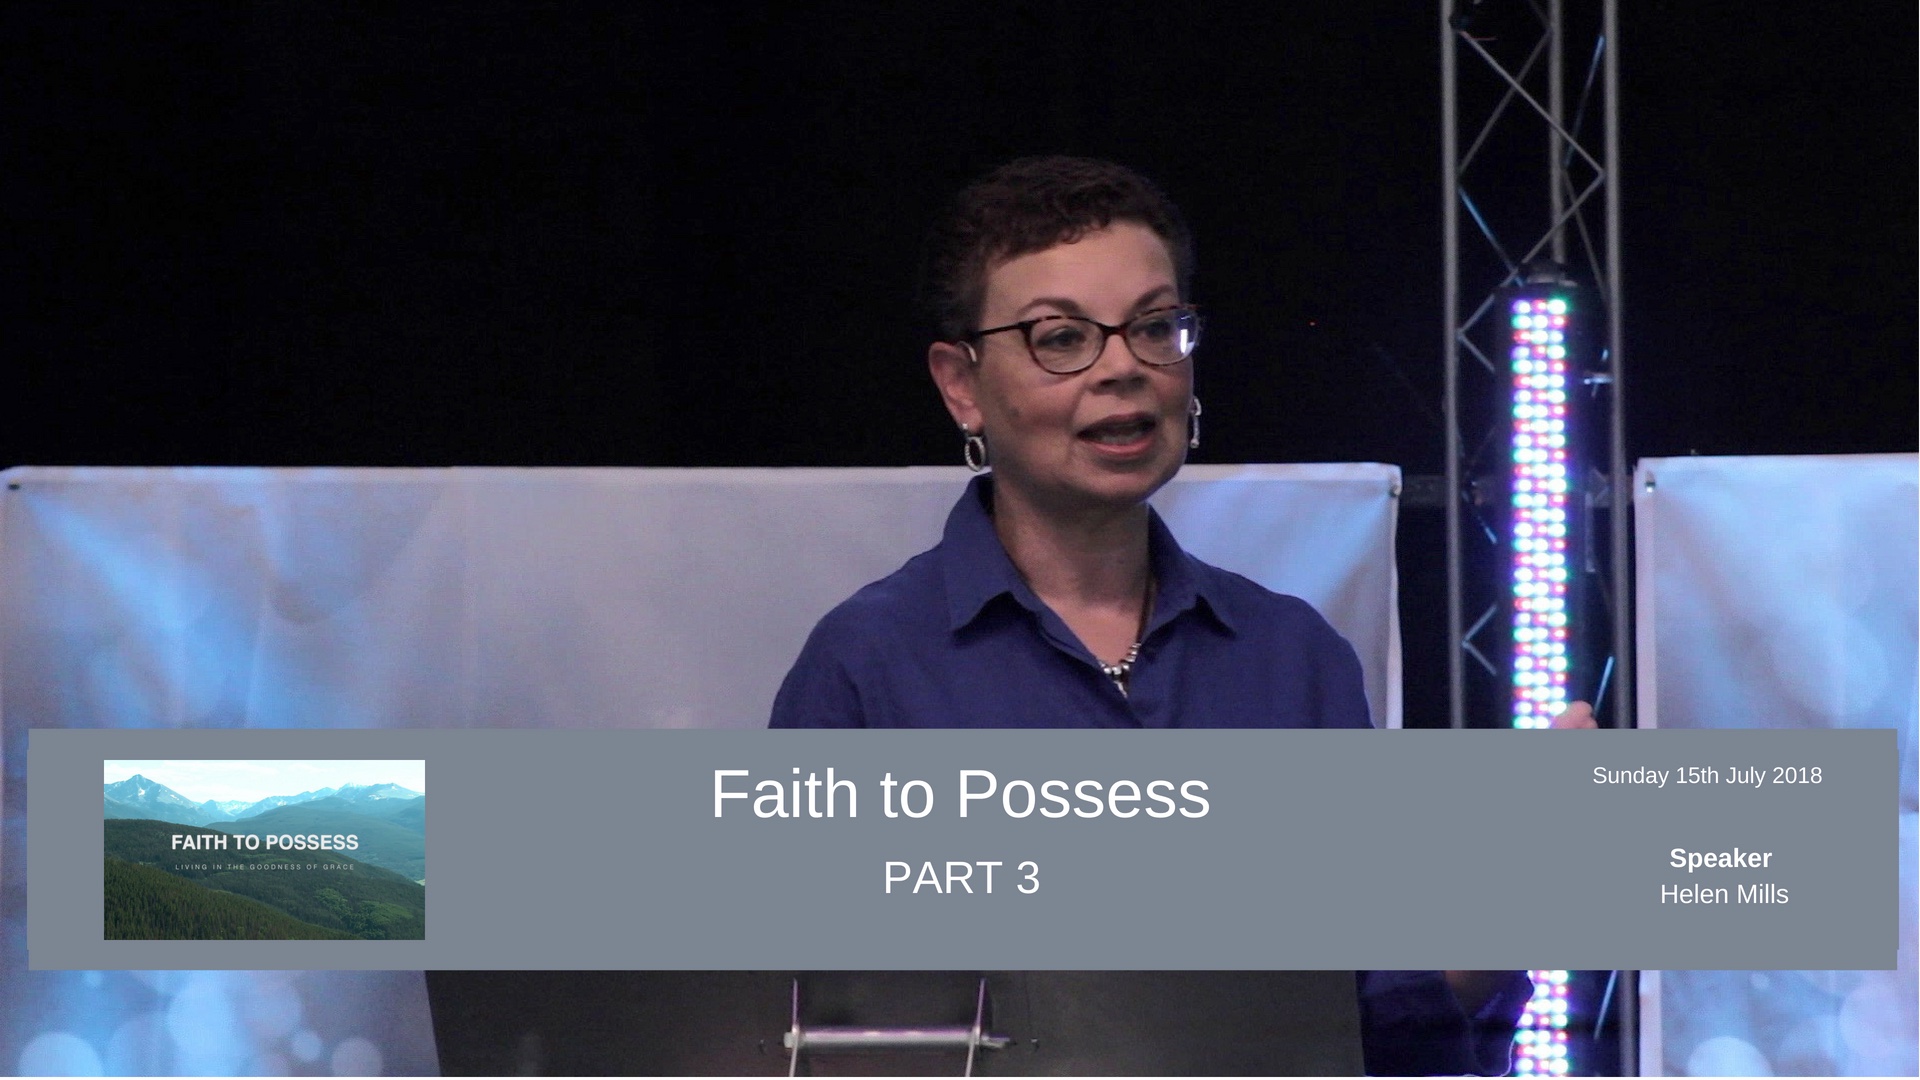 Faith to Possess - Part 3 - Faith is not blind